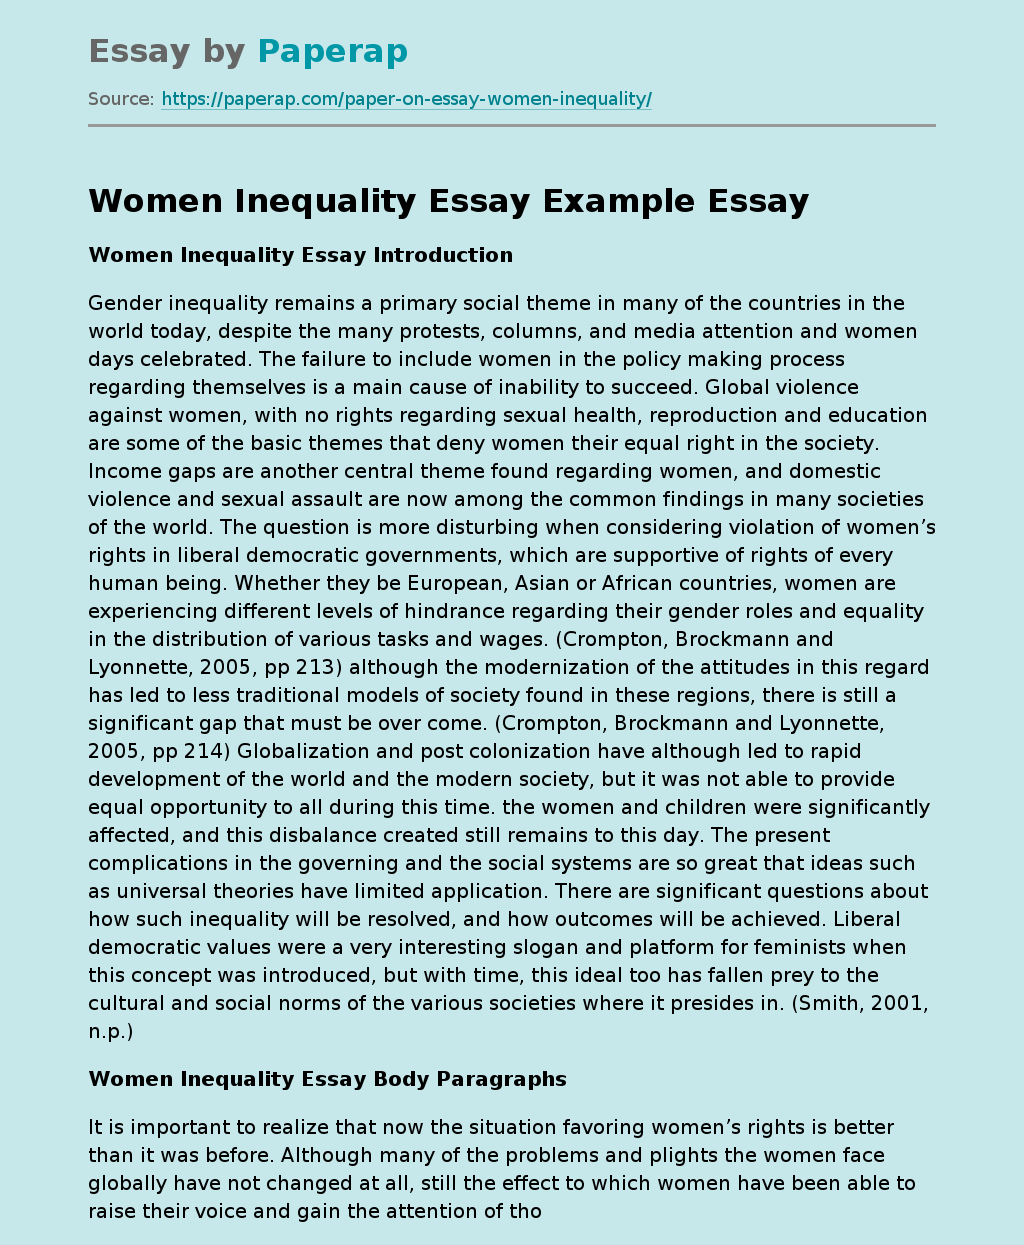 Women Inequality Essay Example